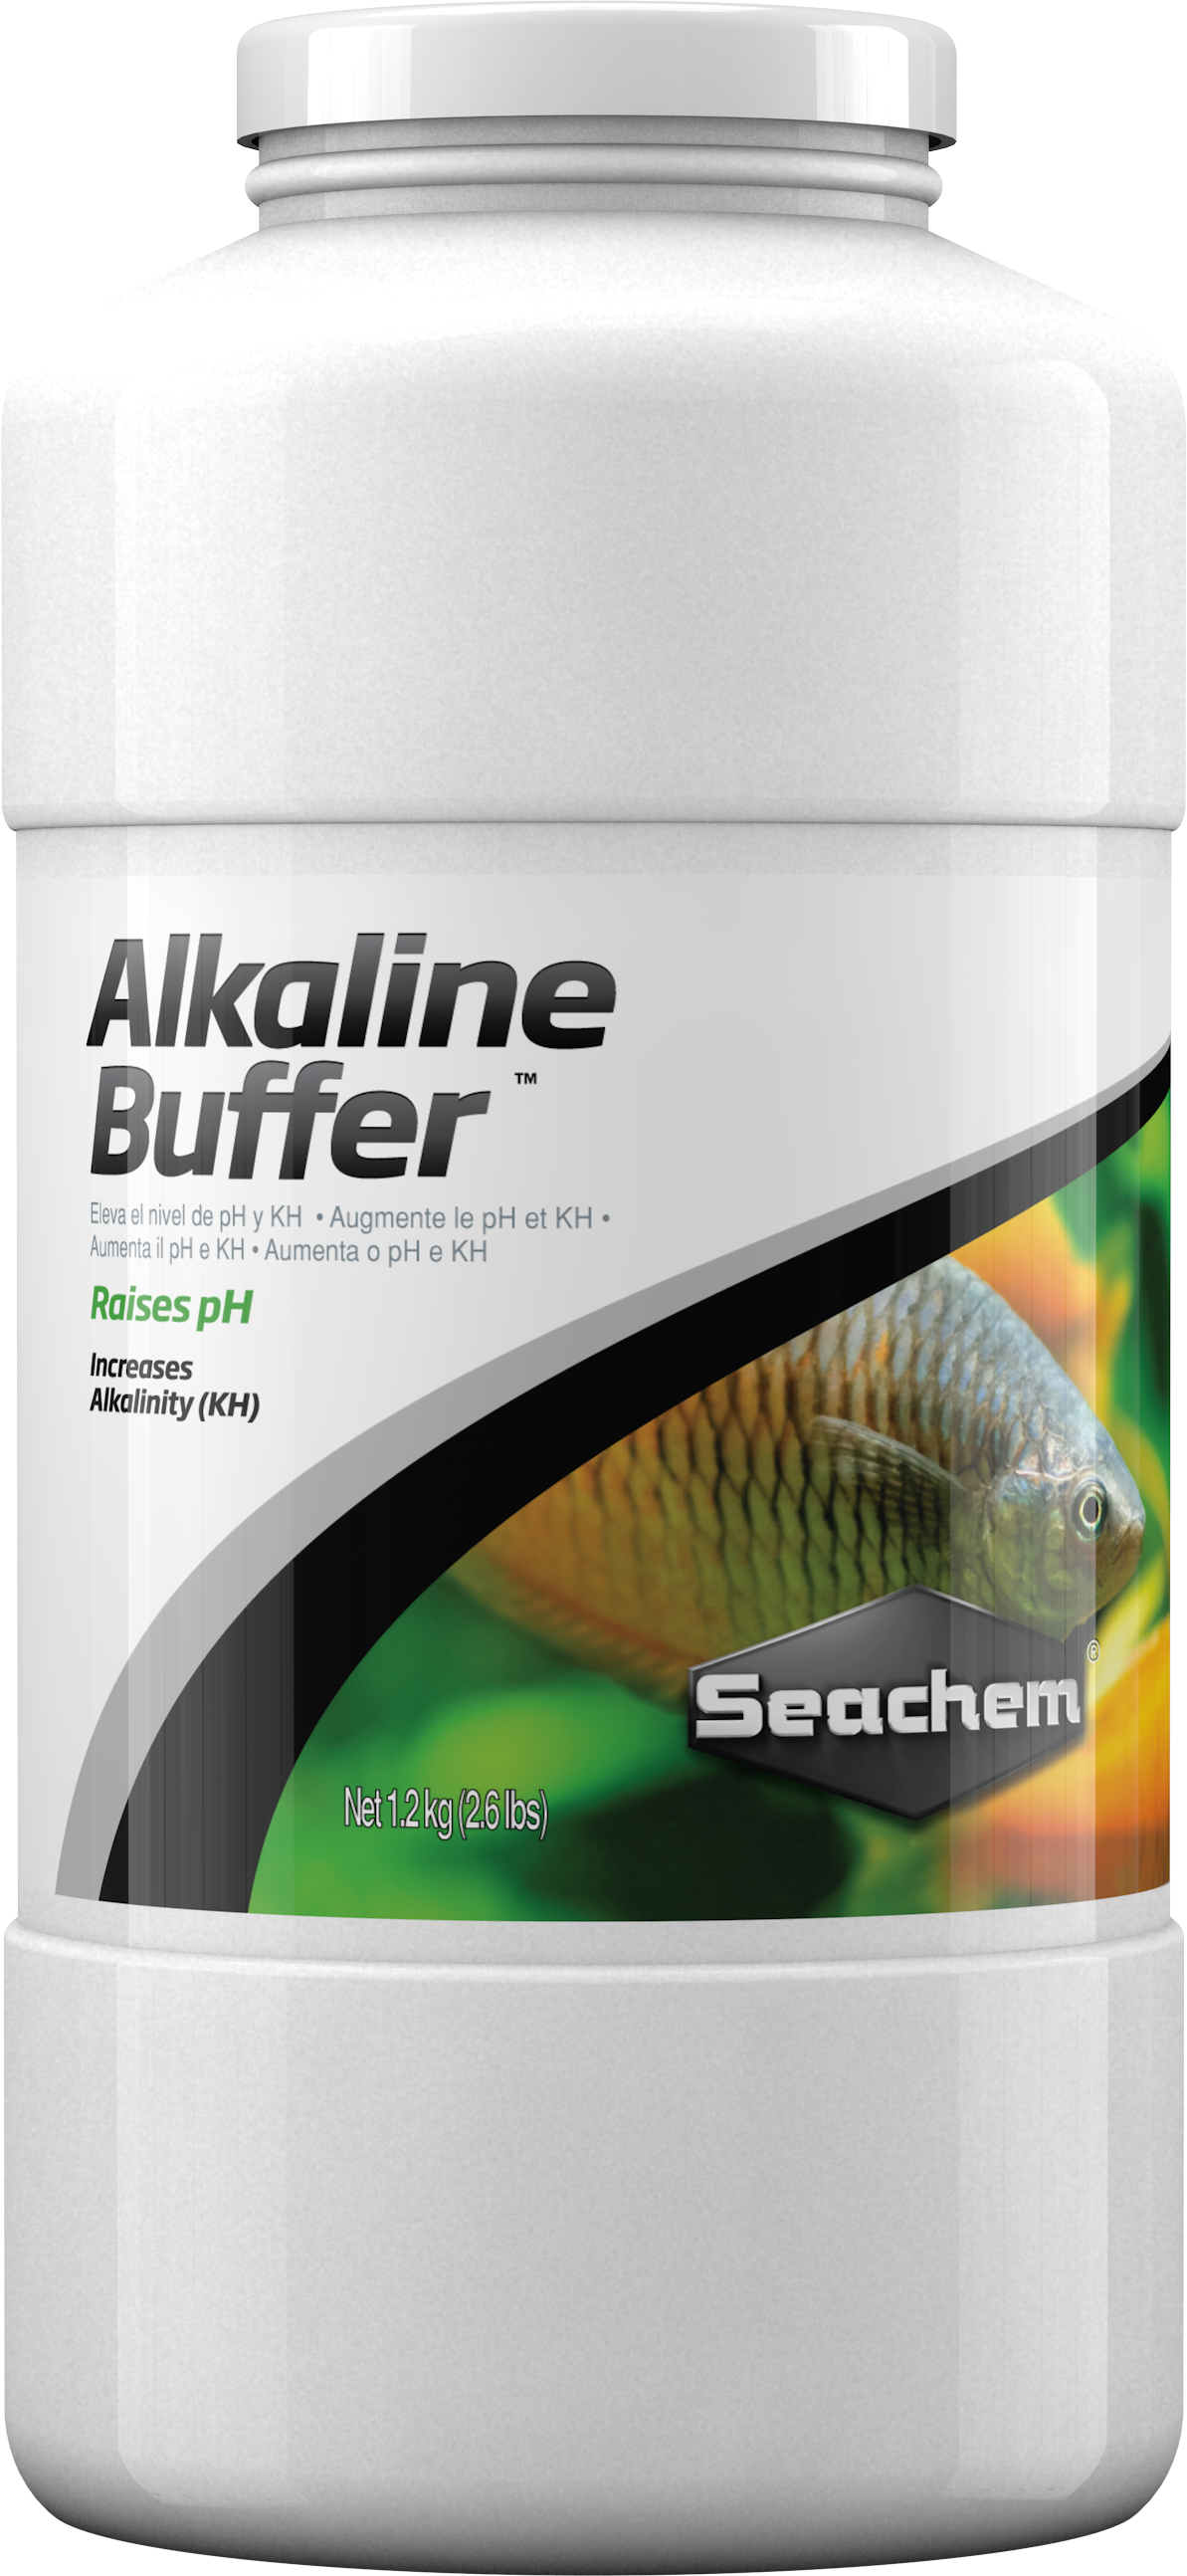 Seachem Alkaline Buffer (1.2 kg)